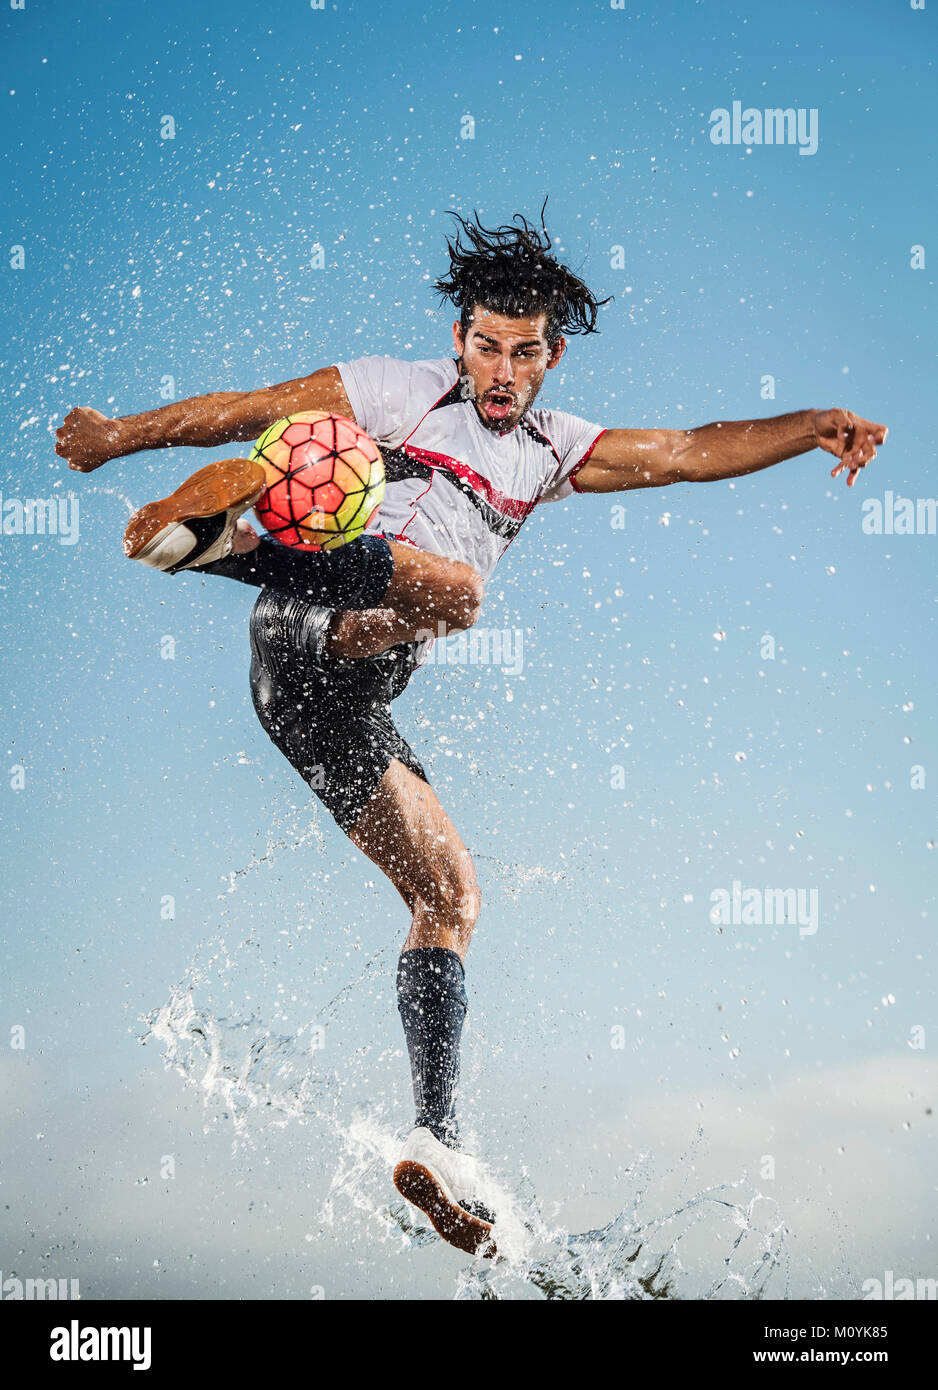 Pulverización de agua sobre el hombre hispano pateando una pelota de fútbol Foto de stock